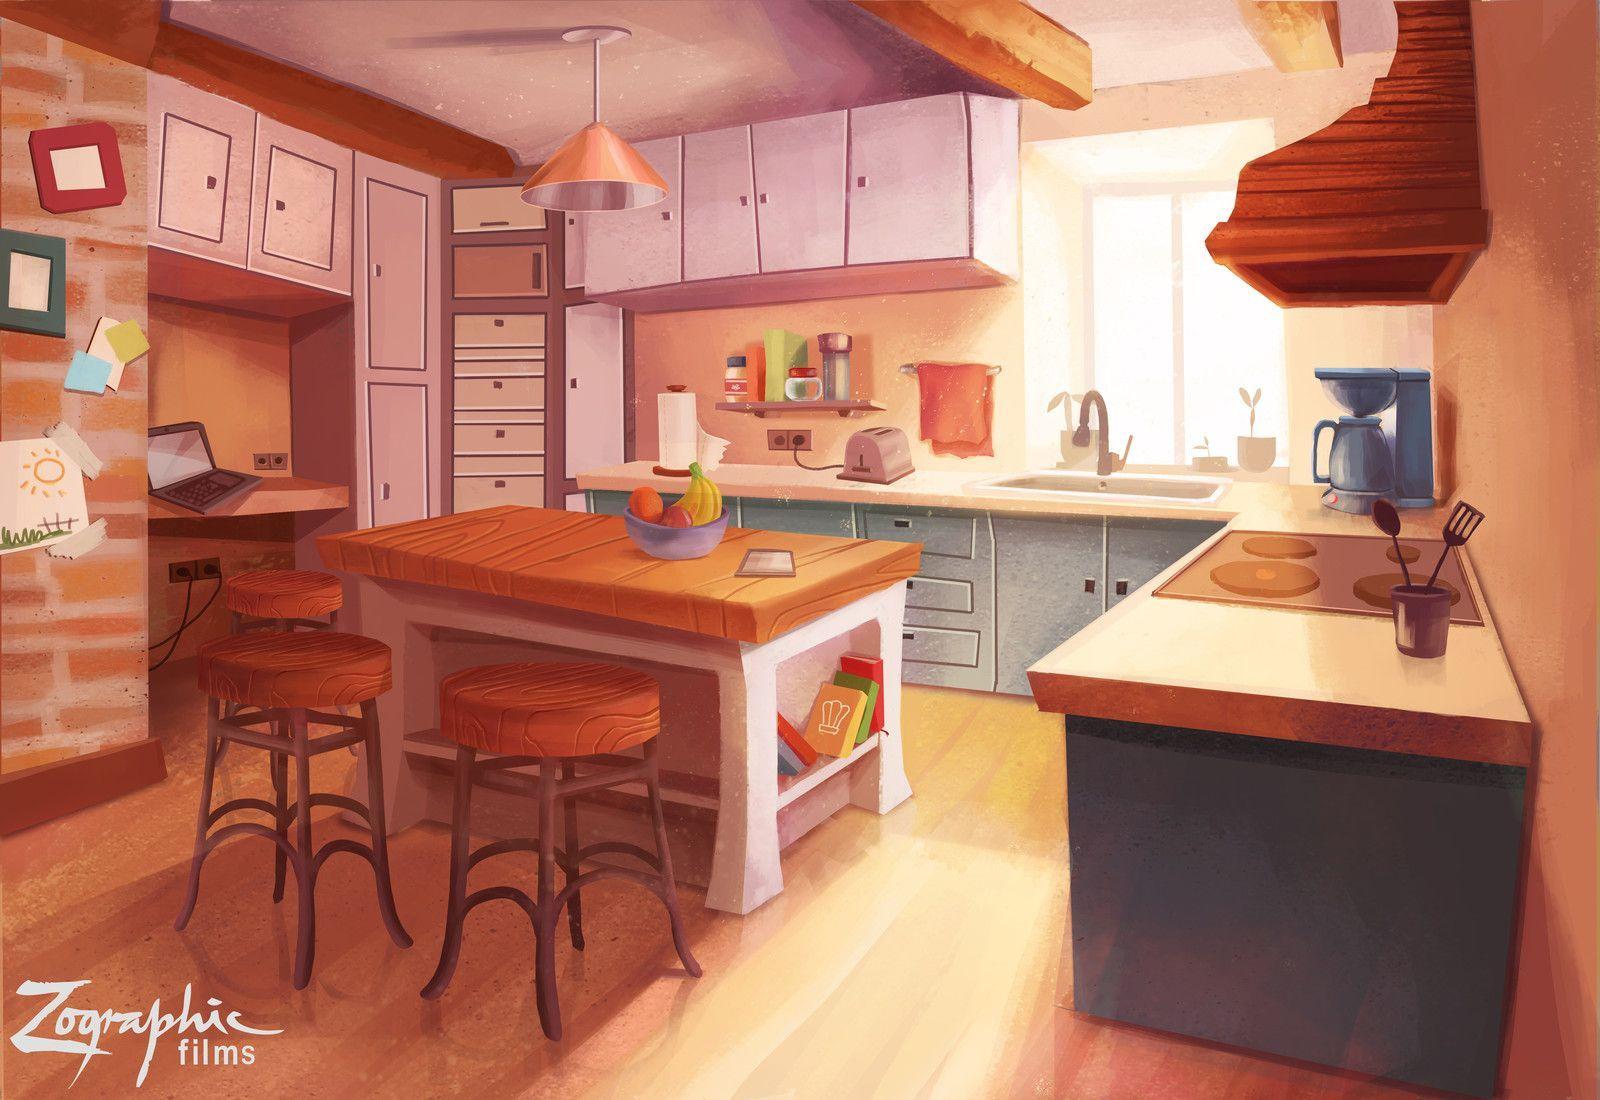 Discover 88 anime kitchen backgrounds  induhocakina